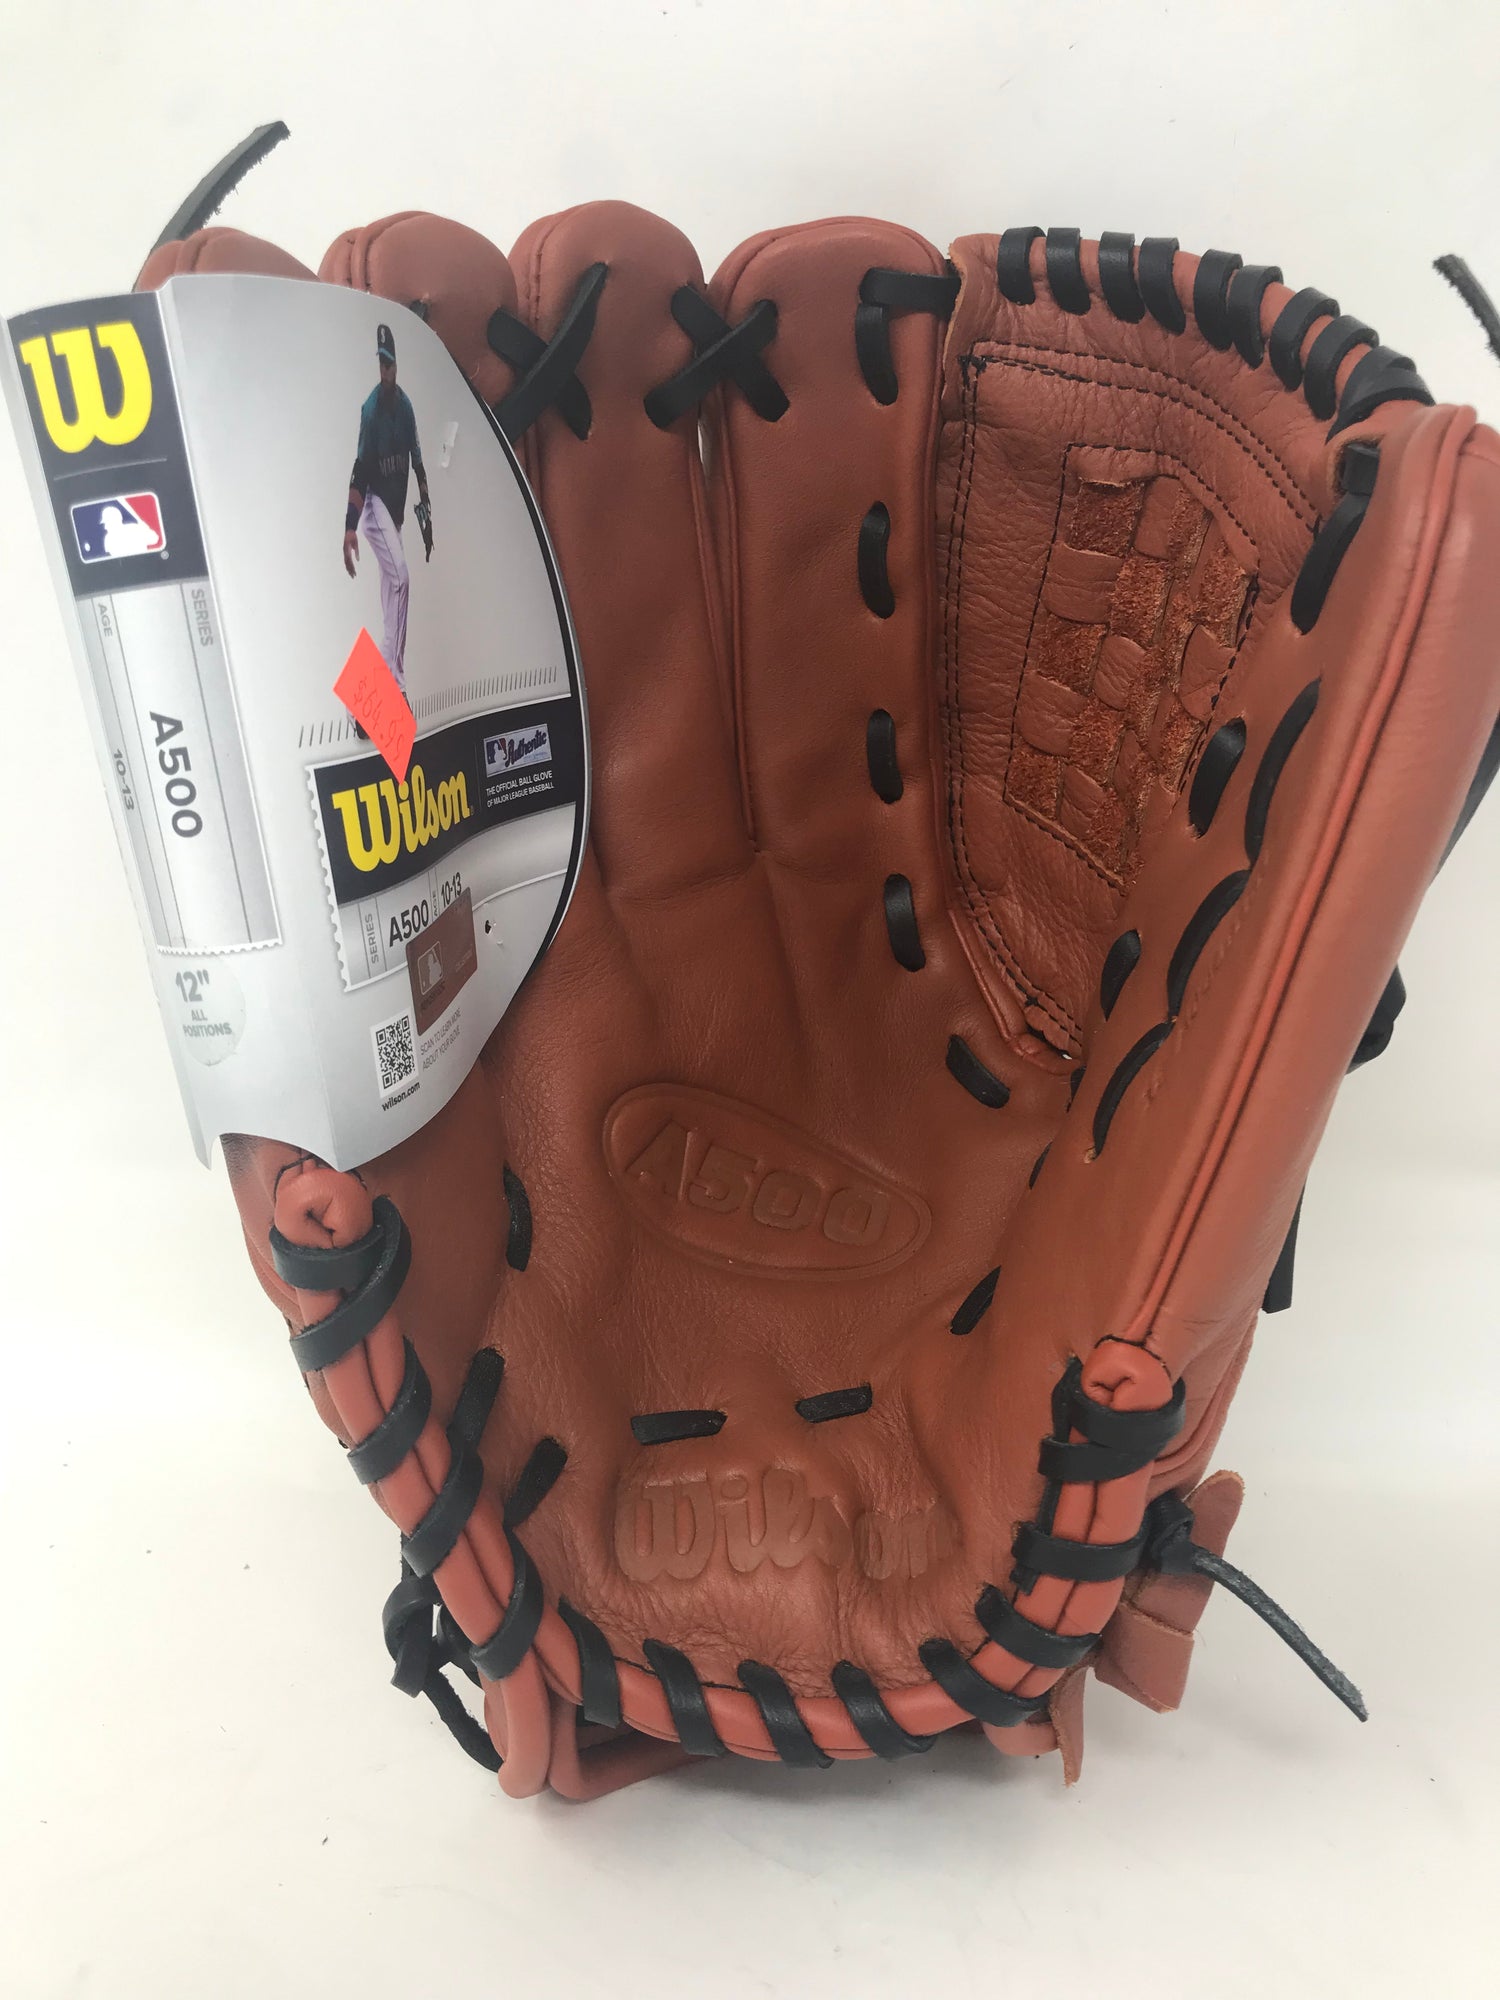 Wilson 12 A500 Youth Baseball Glove